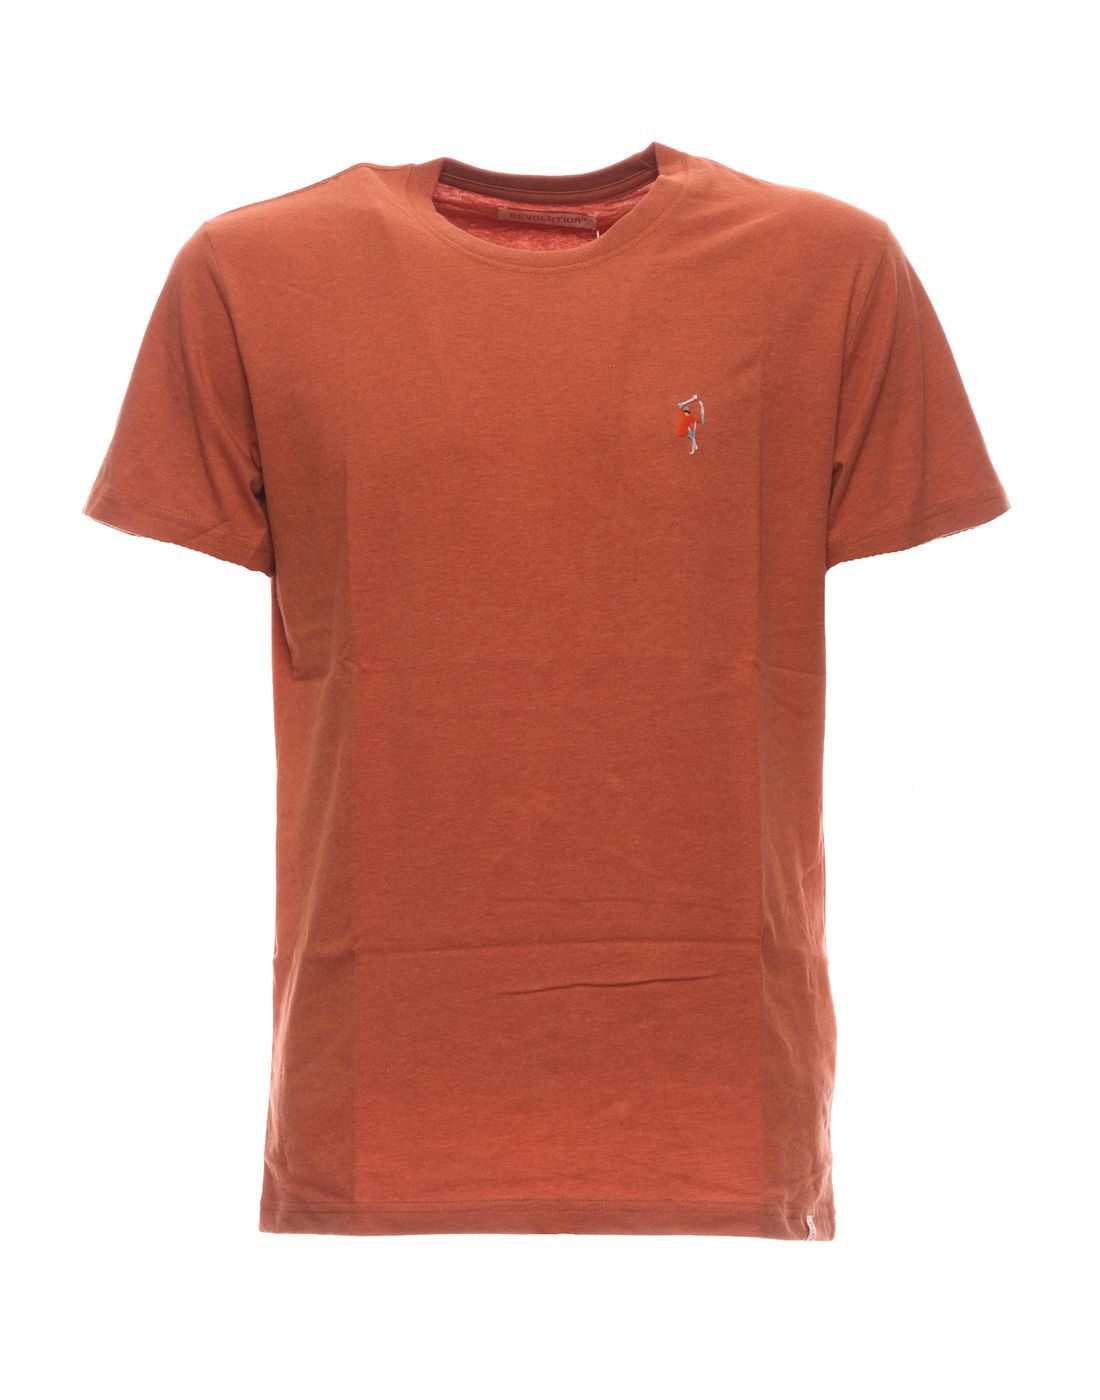 T-shirt pour l'homme 1294 orange-mel REVOLUTION